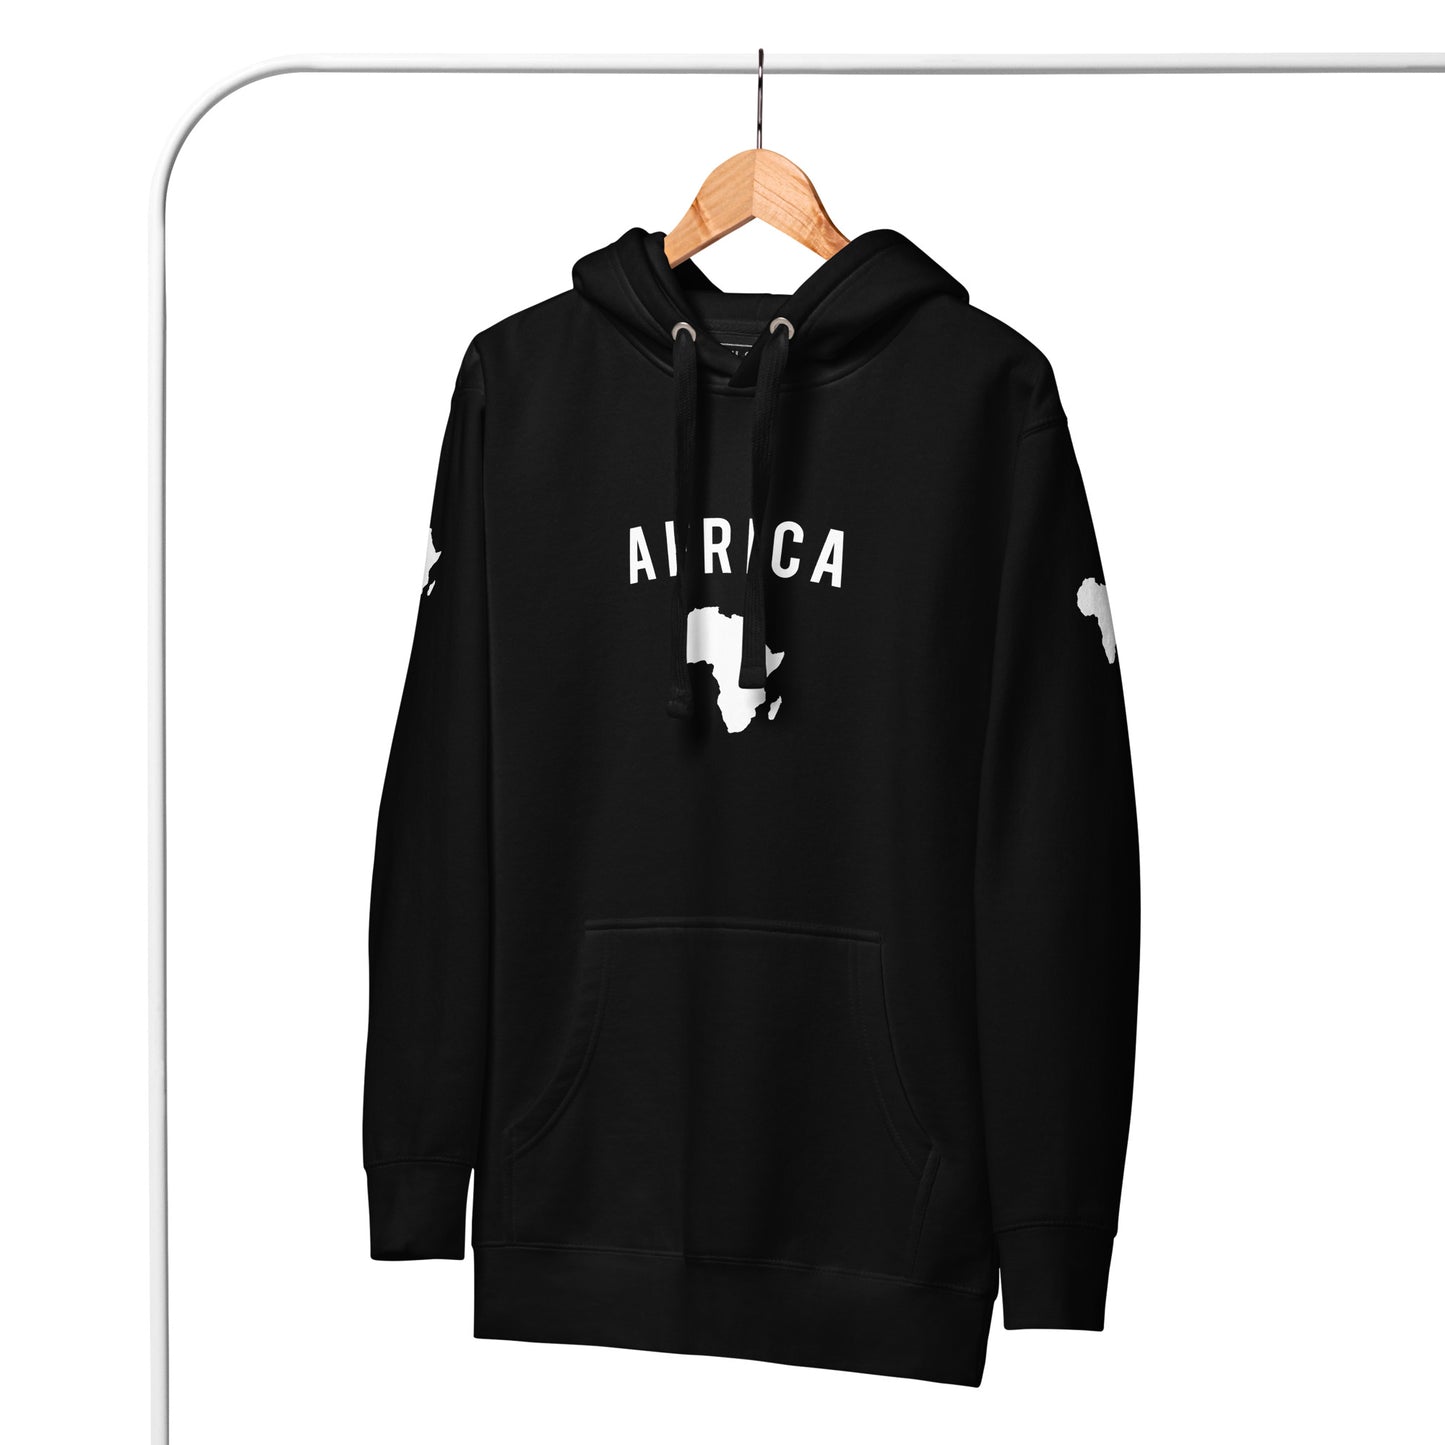 TEAM AFRICA Hoodie (Black)